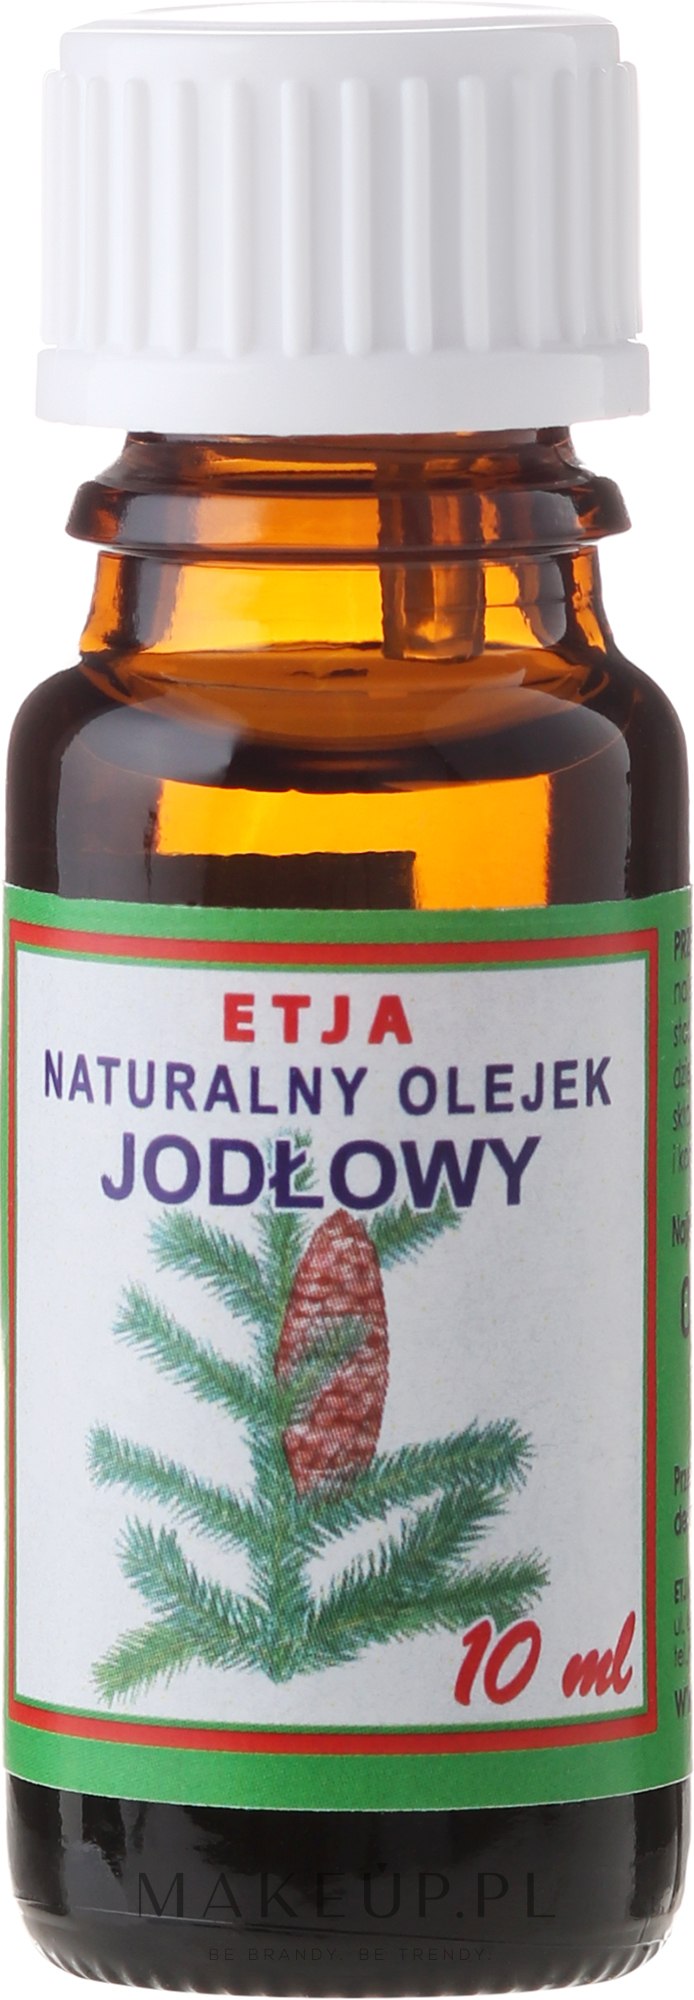 Naturalny olejek eteryczny Jodłowy - Etja — Zdjęcie 10 ml